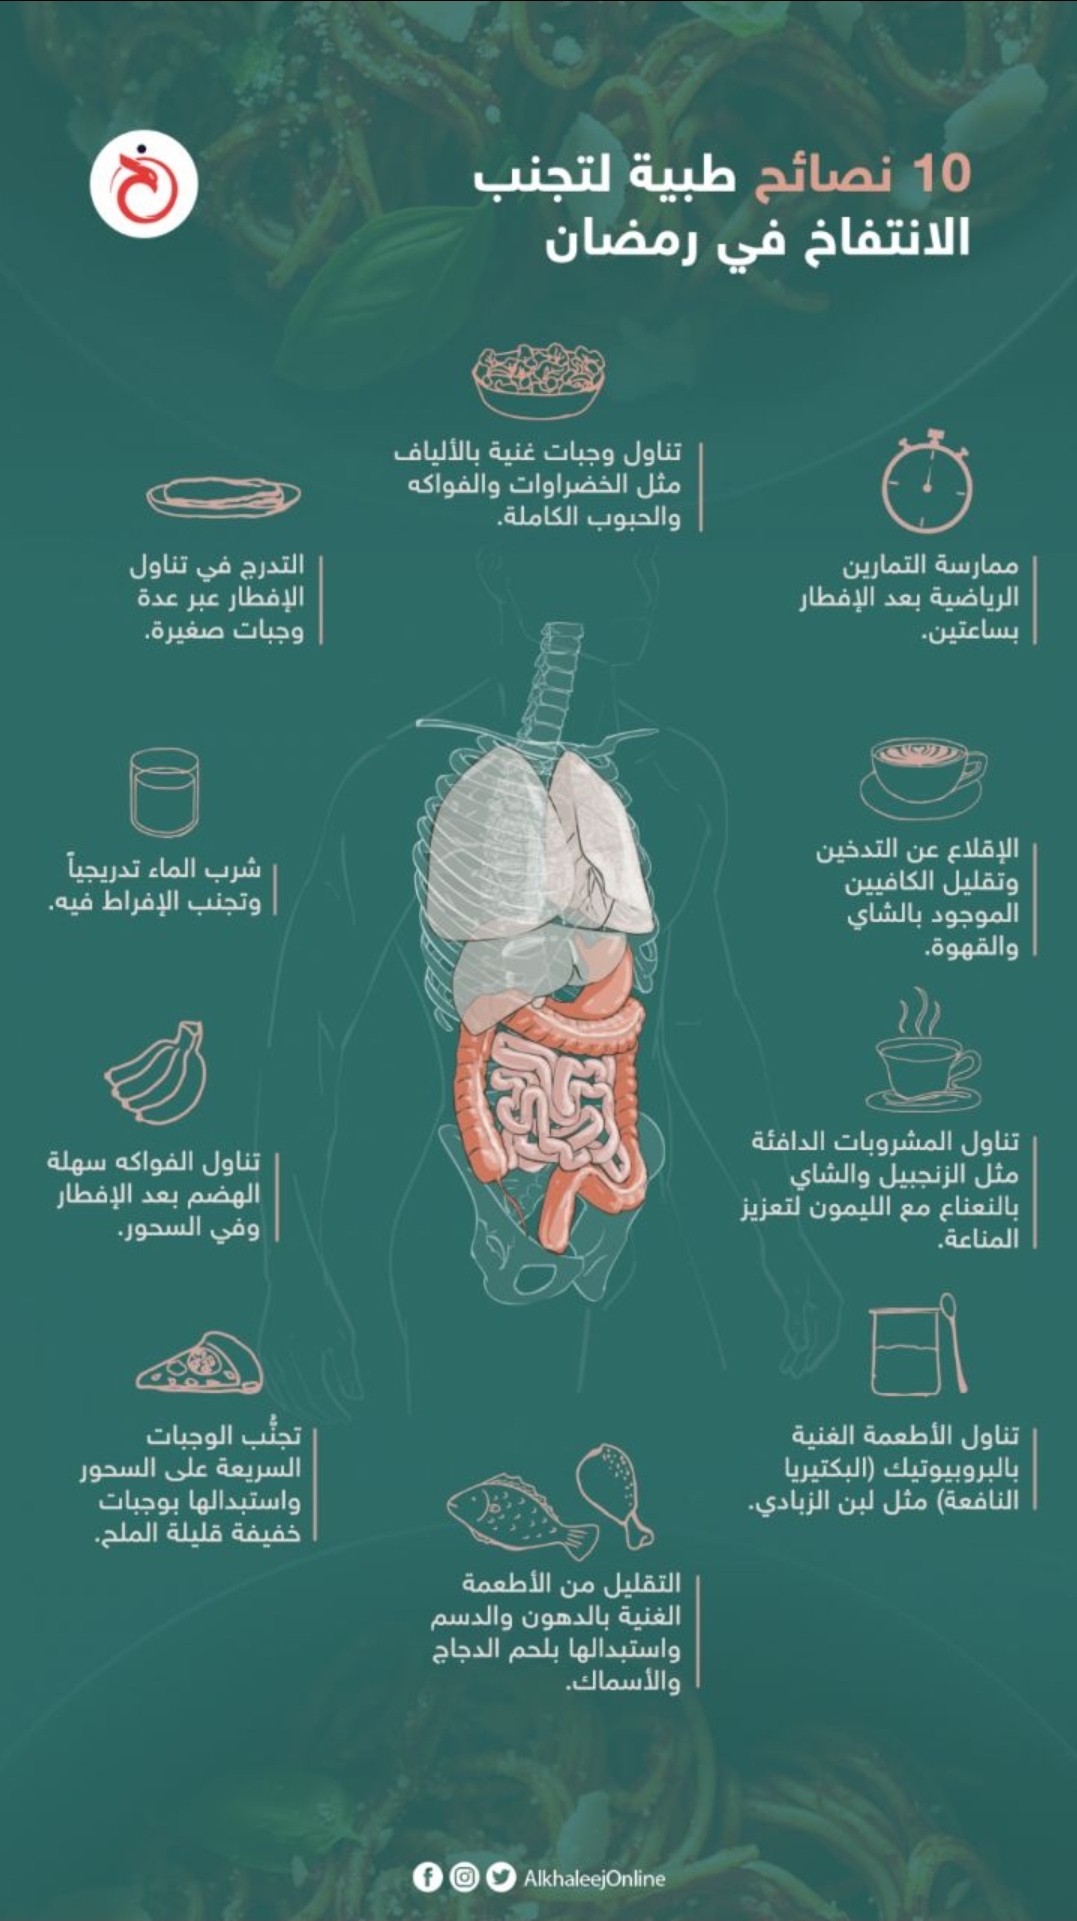 نصائح طبية لتجنب "الانتفاخ" في رمضان